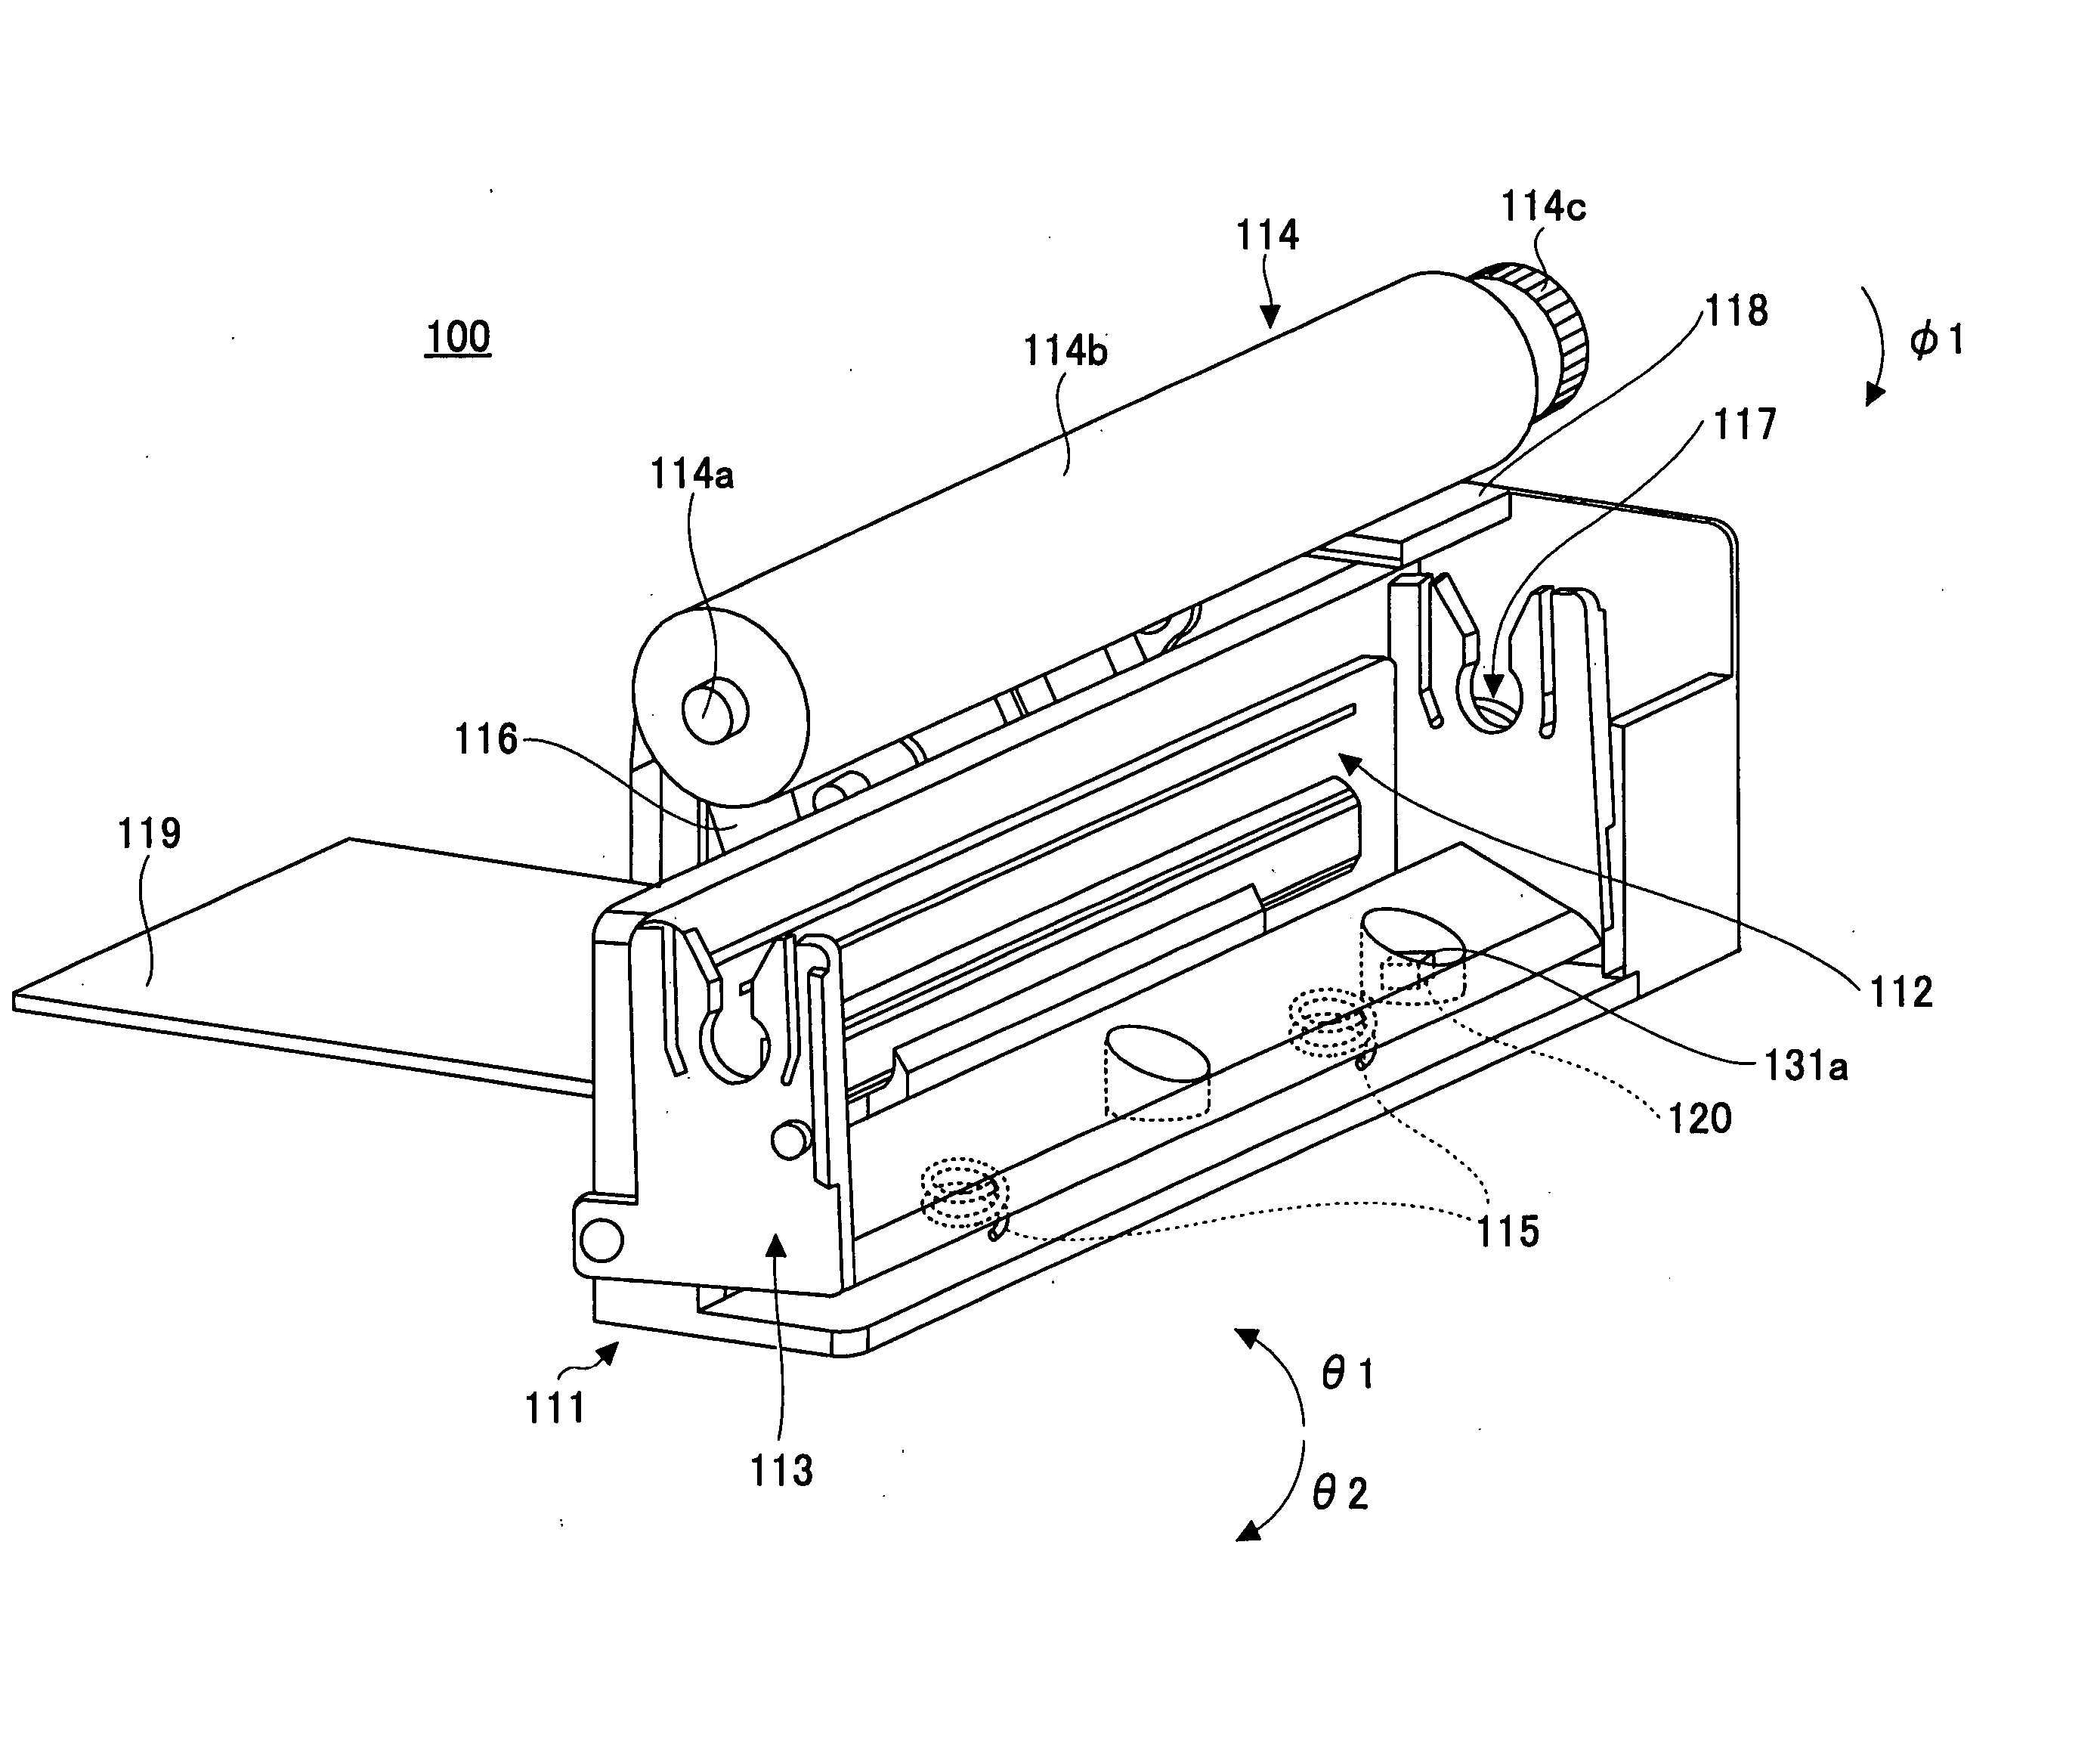 Printing apparatus